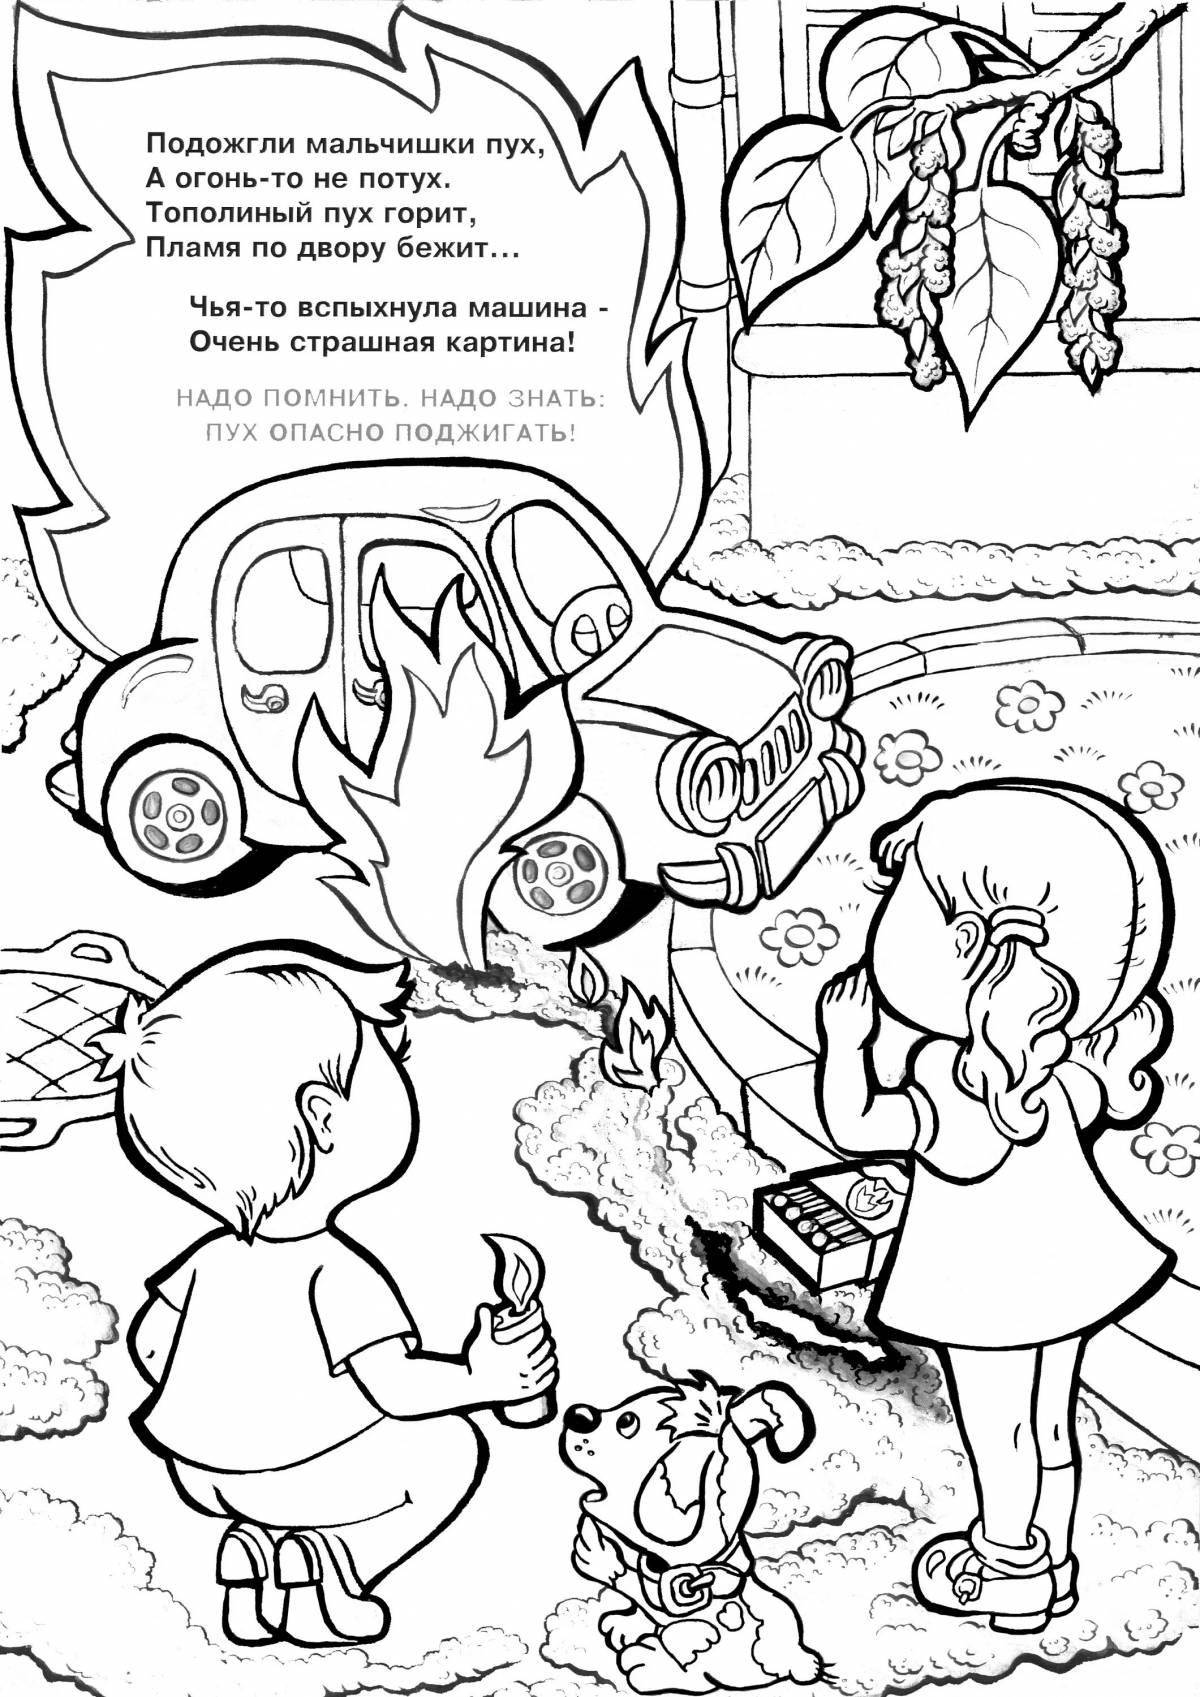 Развлекательный путеводитель по пожарной безопасности для детей